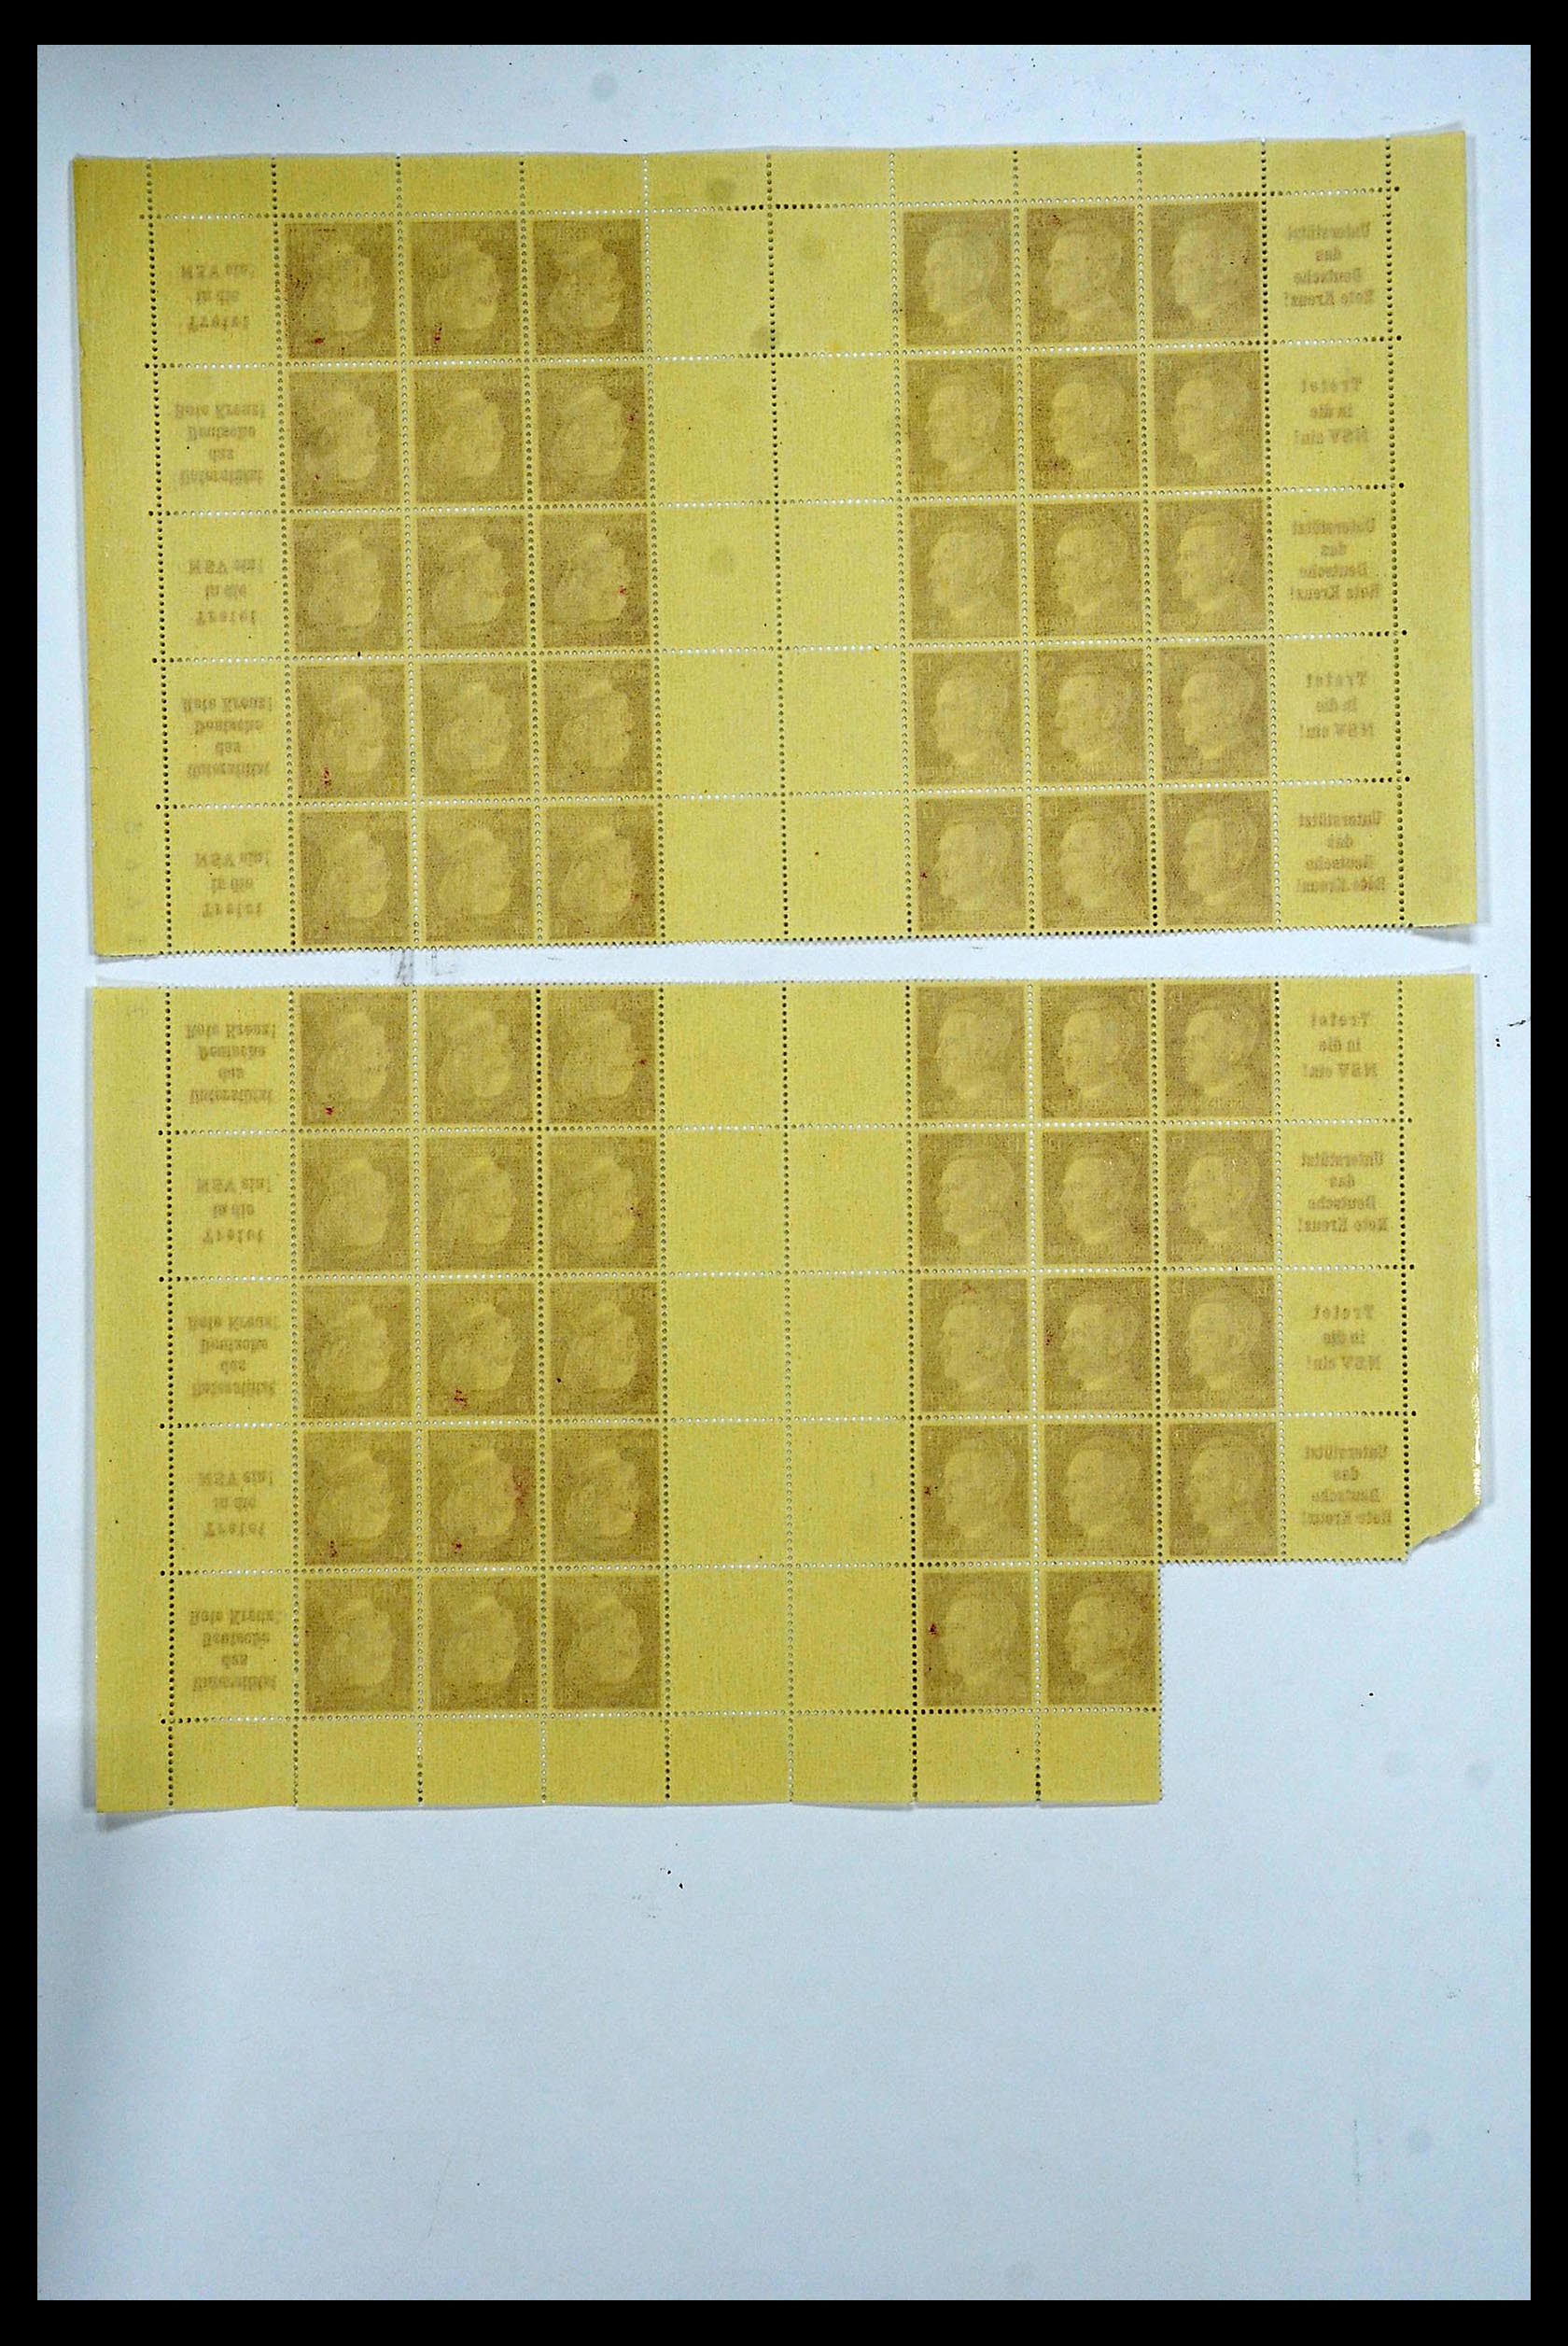 34164 082 - Stamp collection 34164 German Reich Markenheftchenbogen 1933-1942.